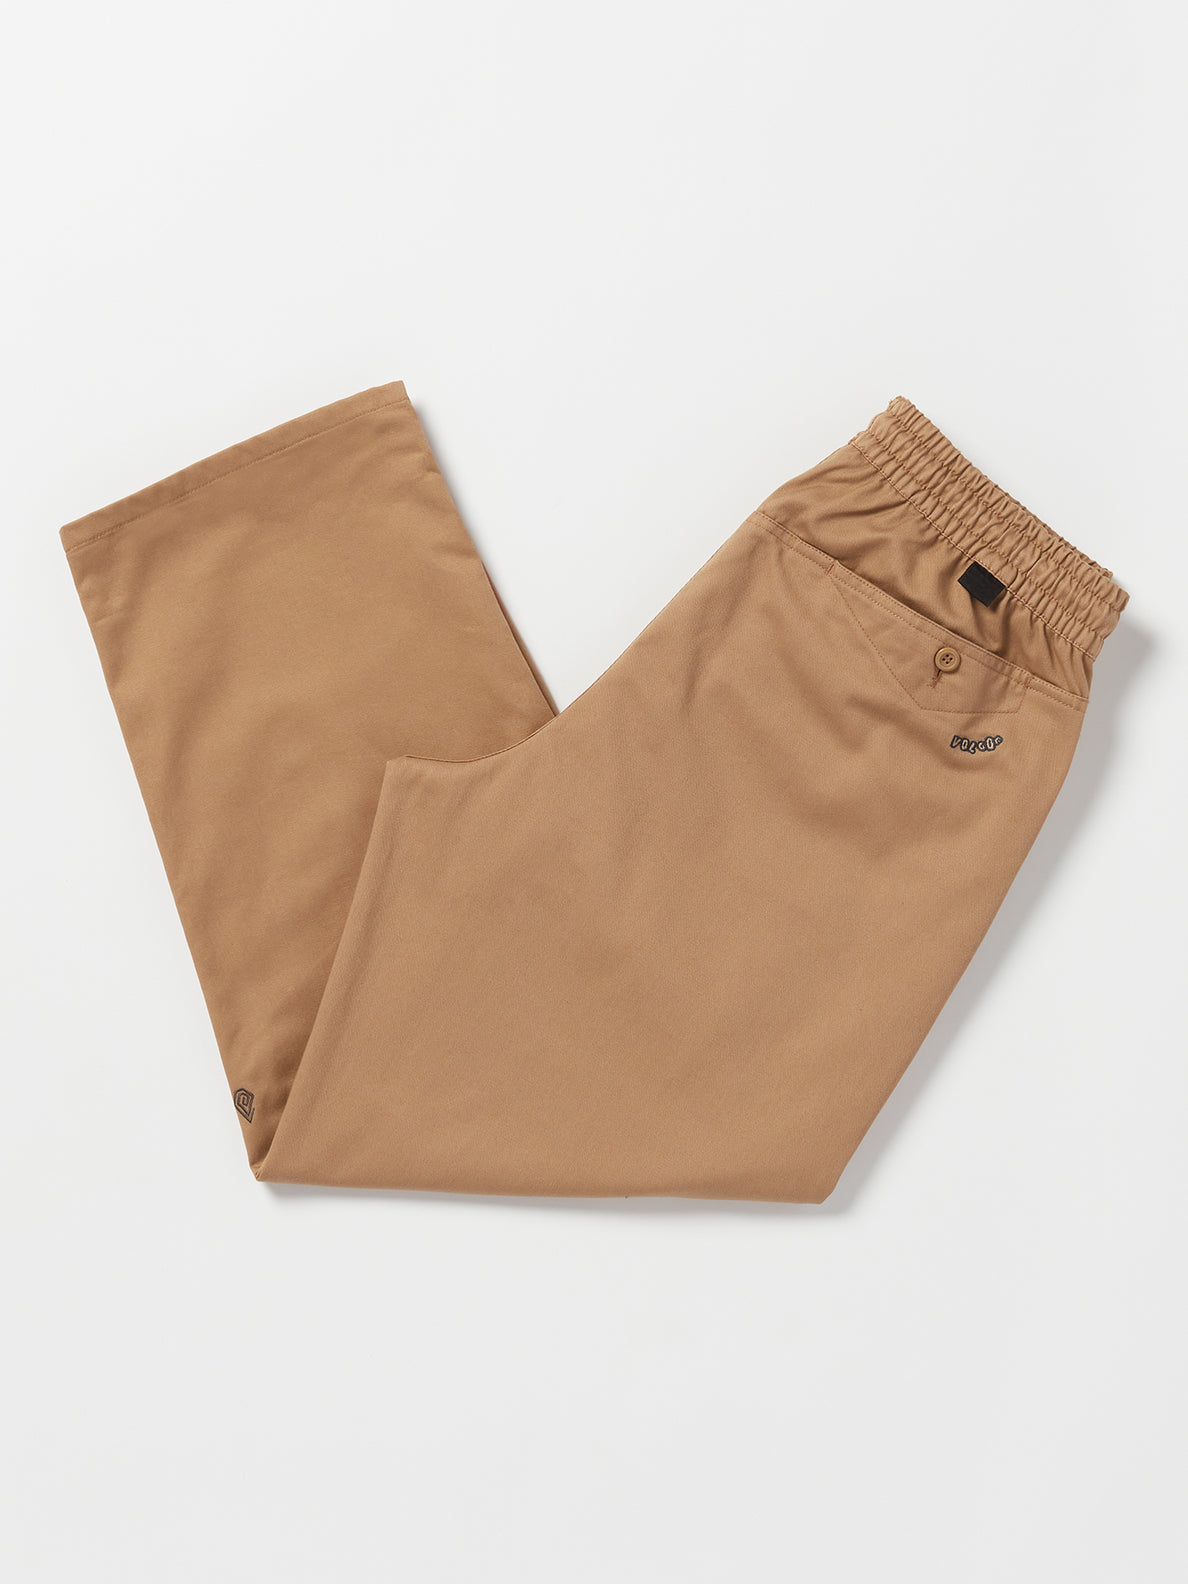 Brown Jazz Pants (SPANDEX)- 200+ Colors